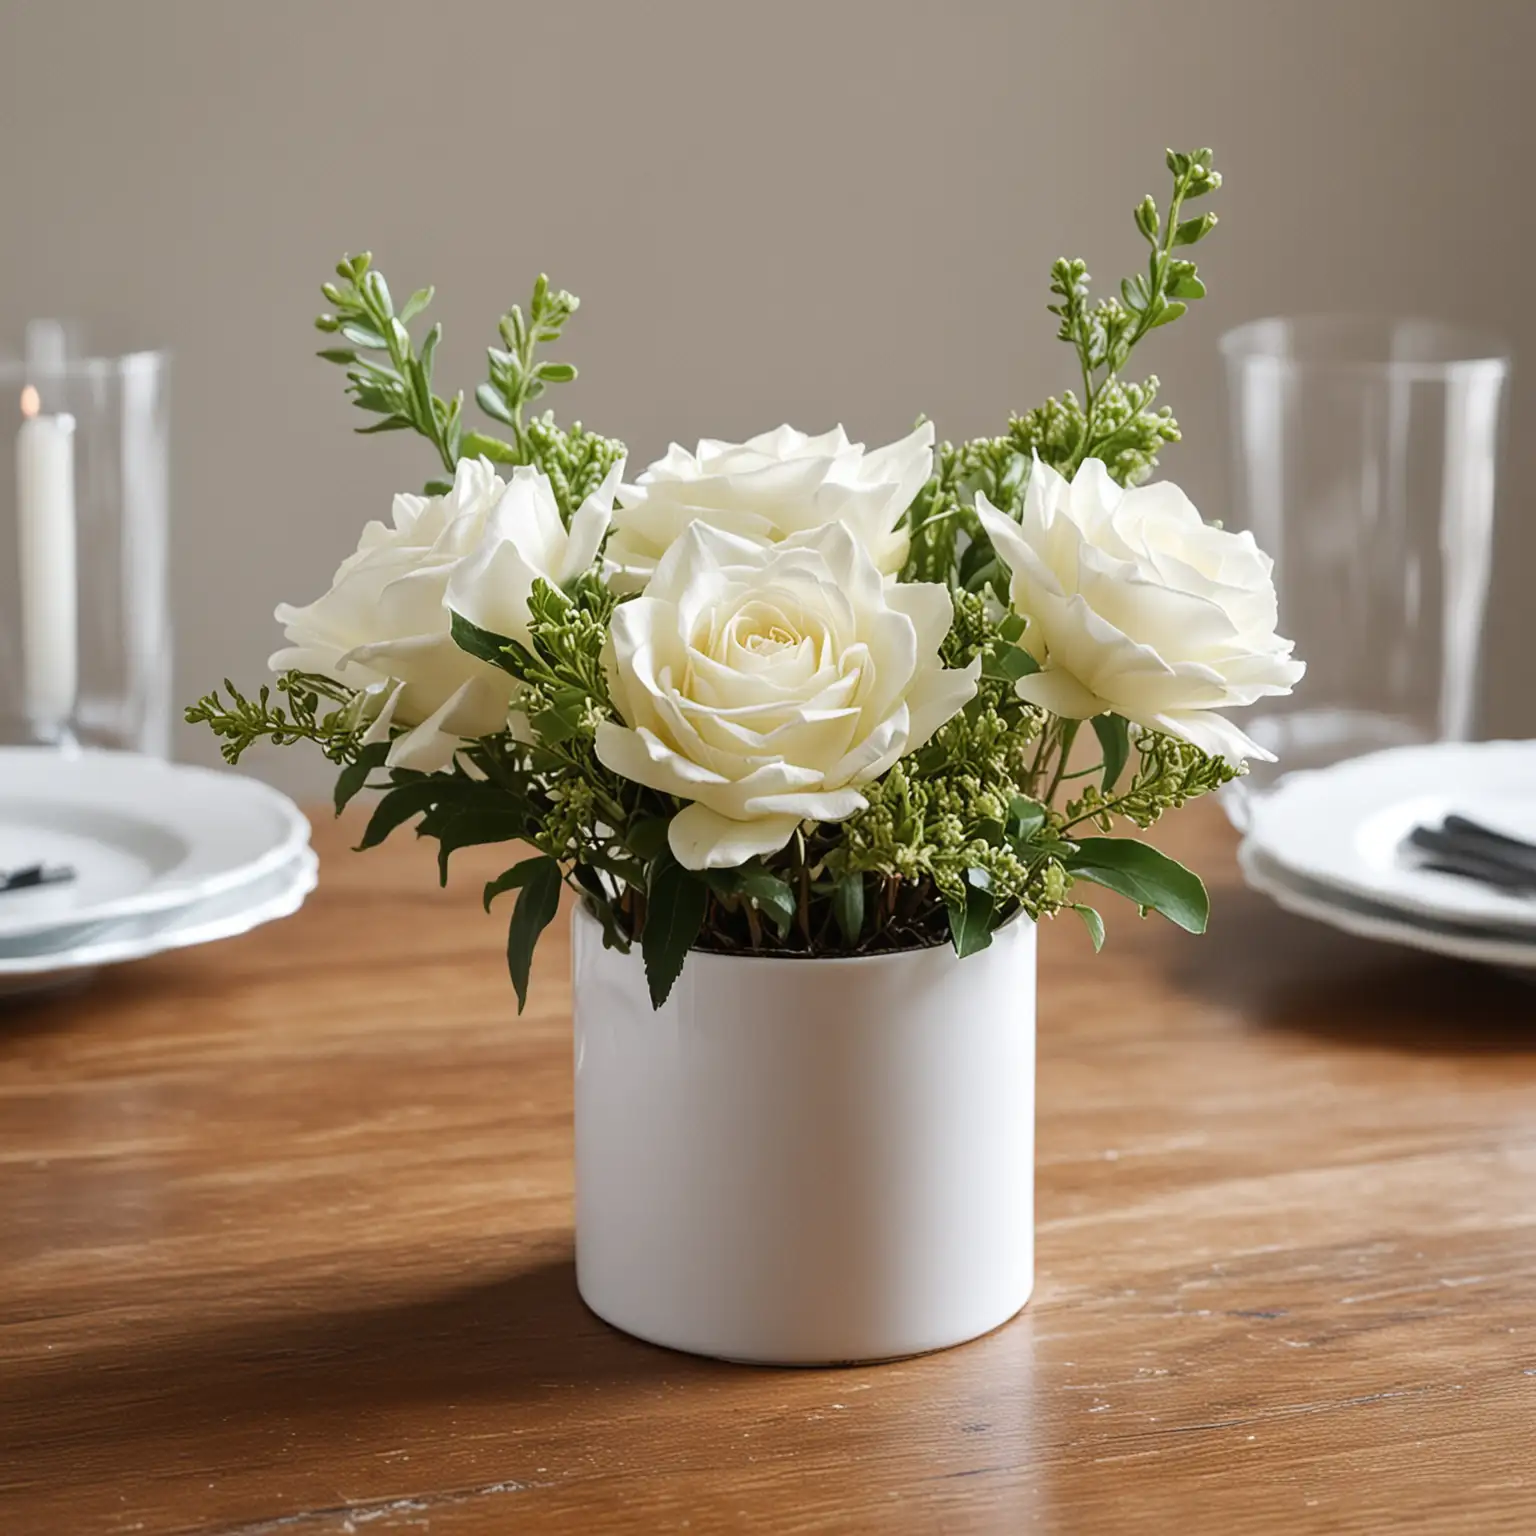 Elegant-DIY-White-Ceramic-Vase-Centerpiece